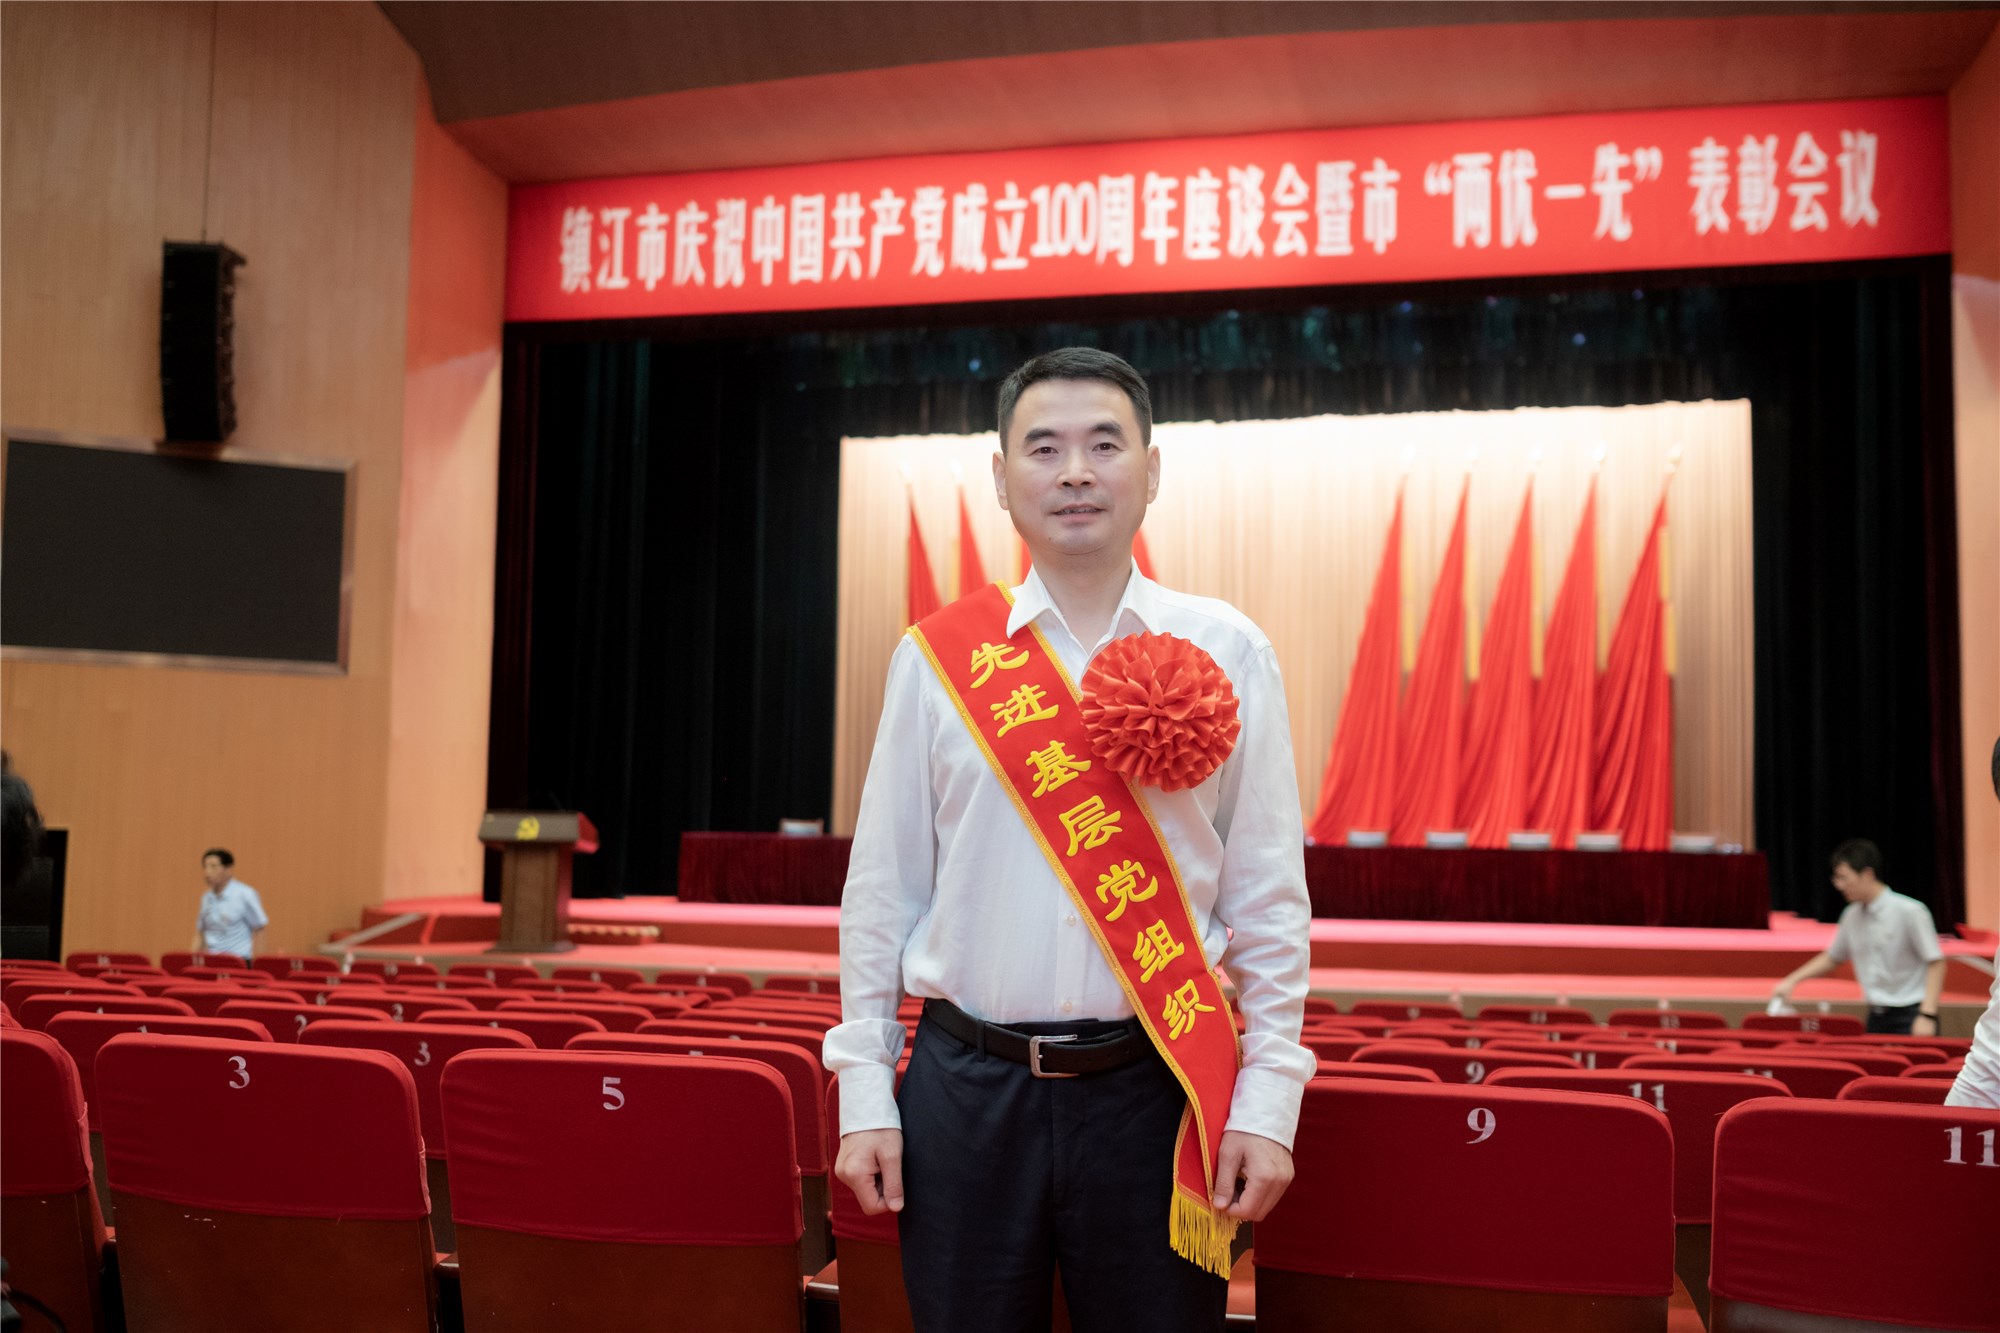 公司黨委榮獲鎮江市委“先進基層黨組織”榮譽稱號